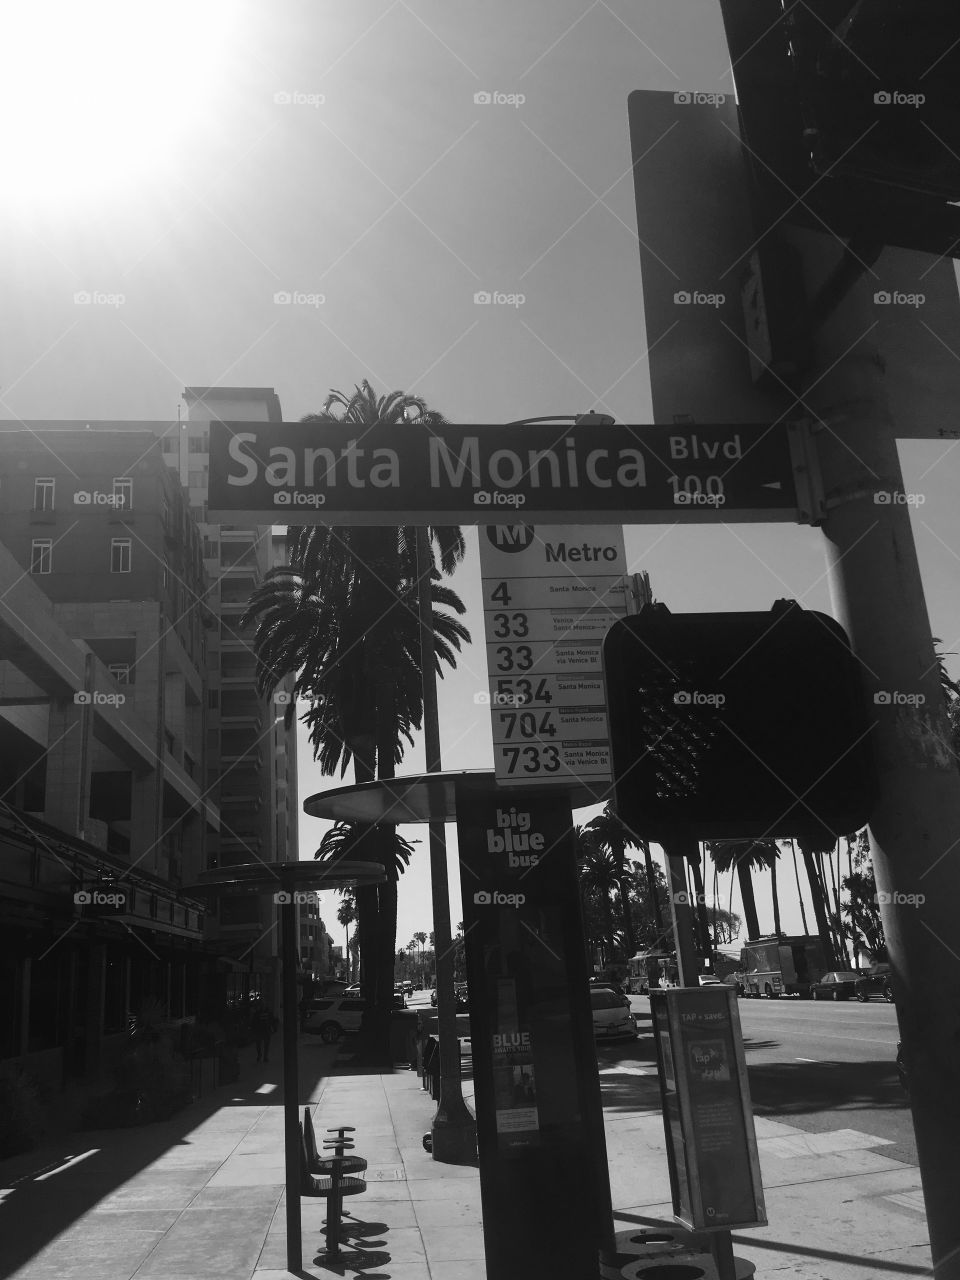 Santa Monica BLVD